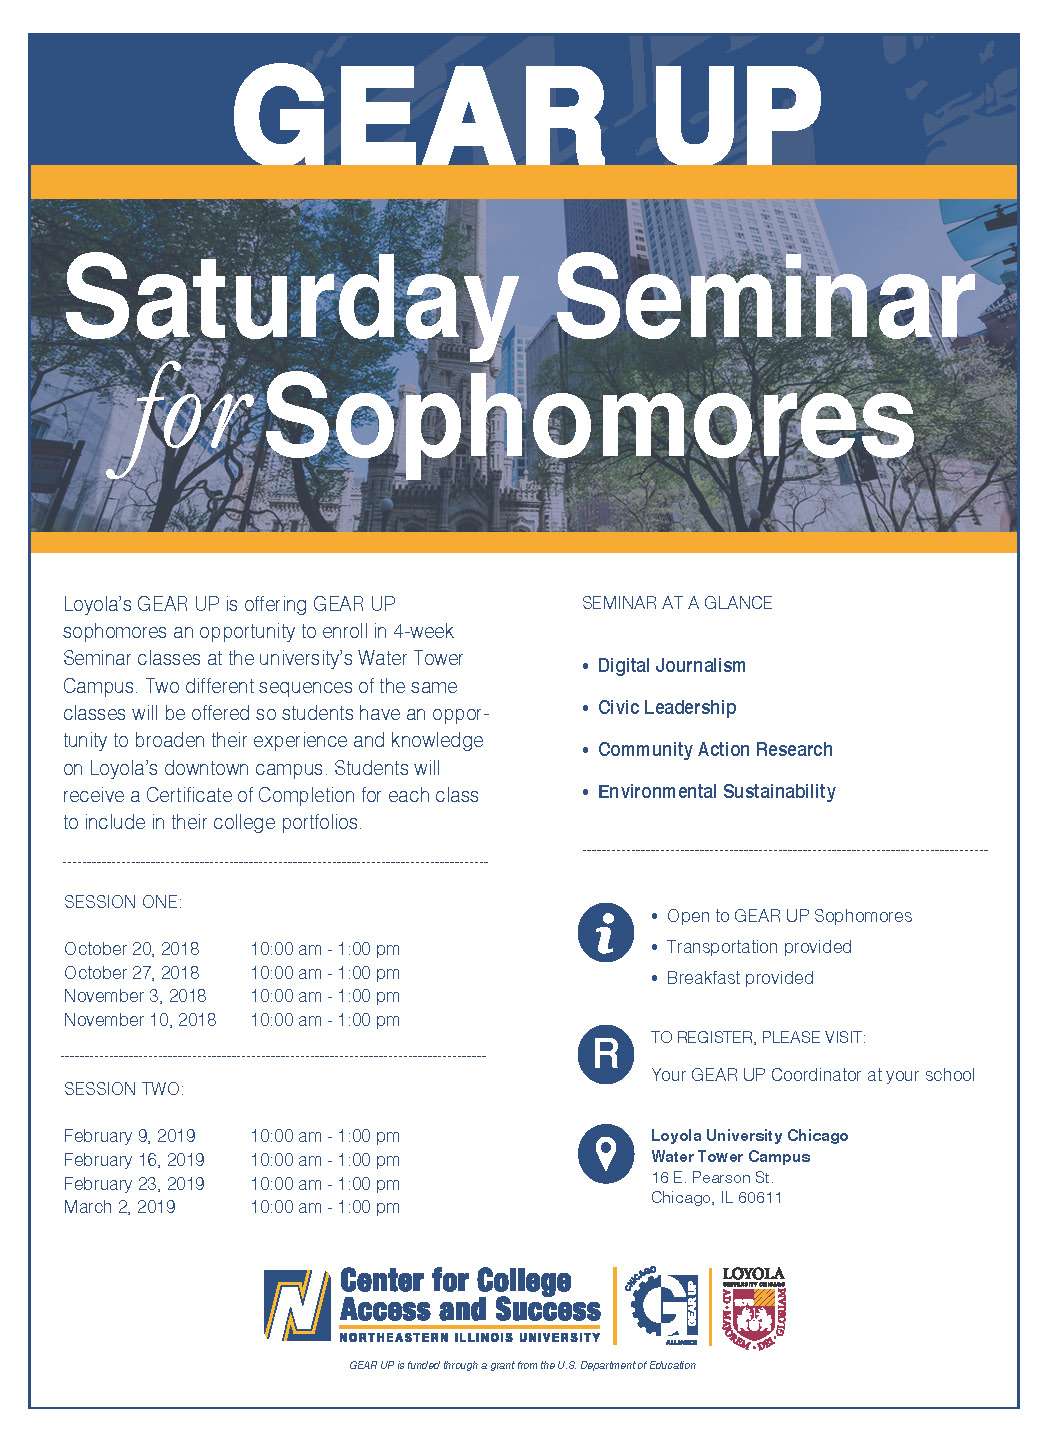 Saturday Seminar for Sophomores